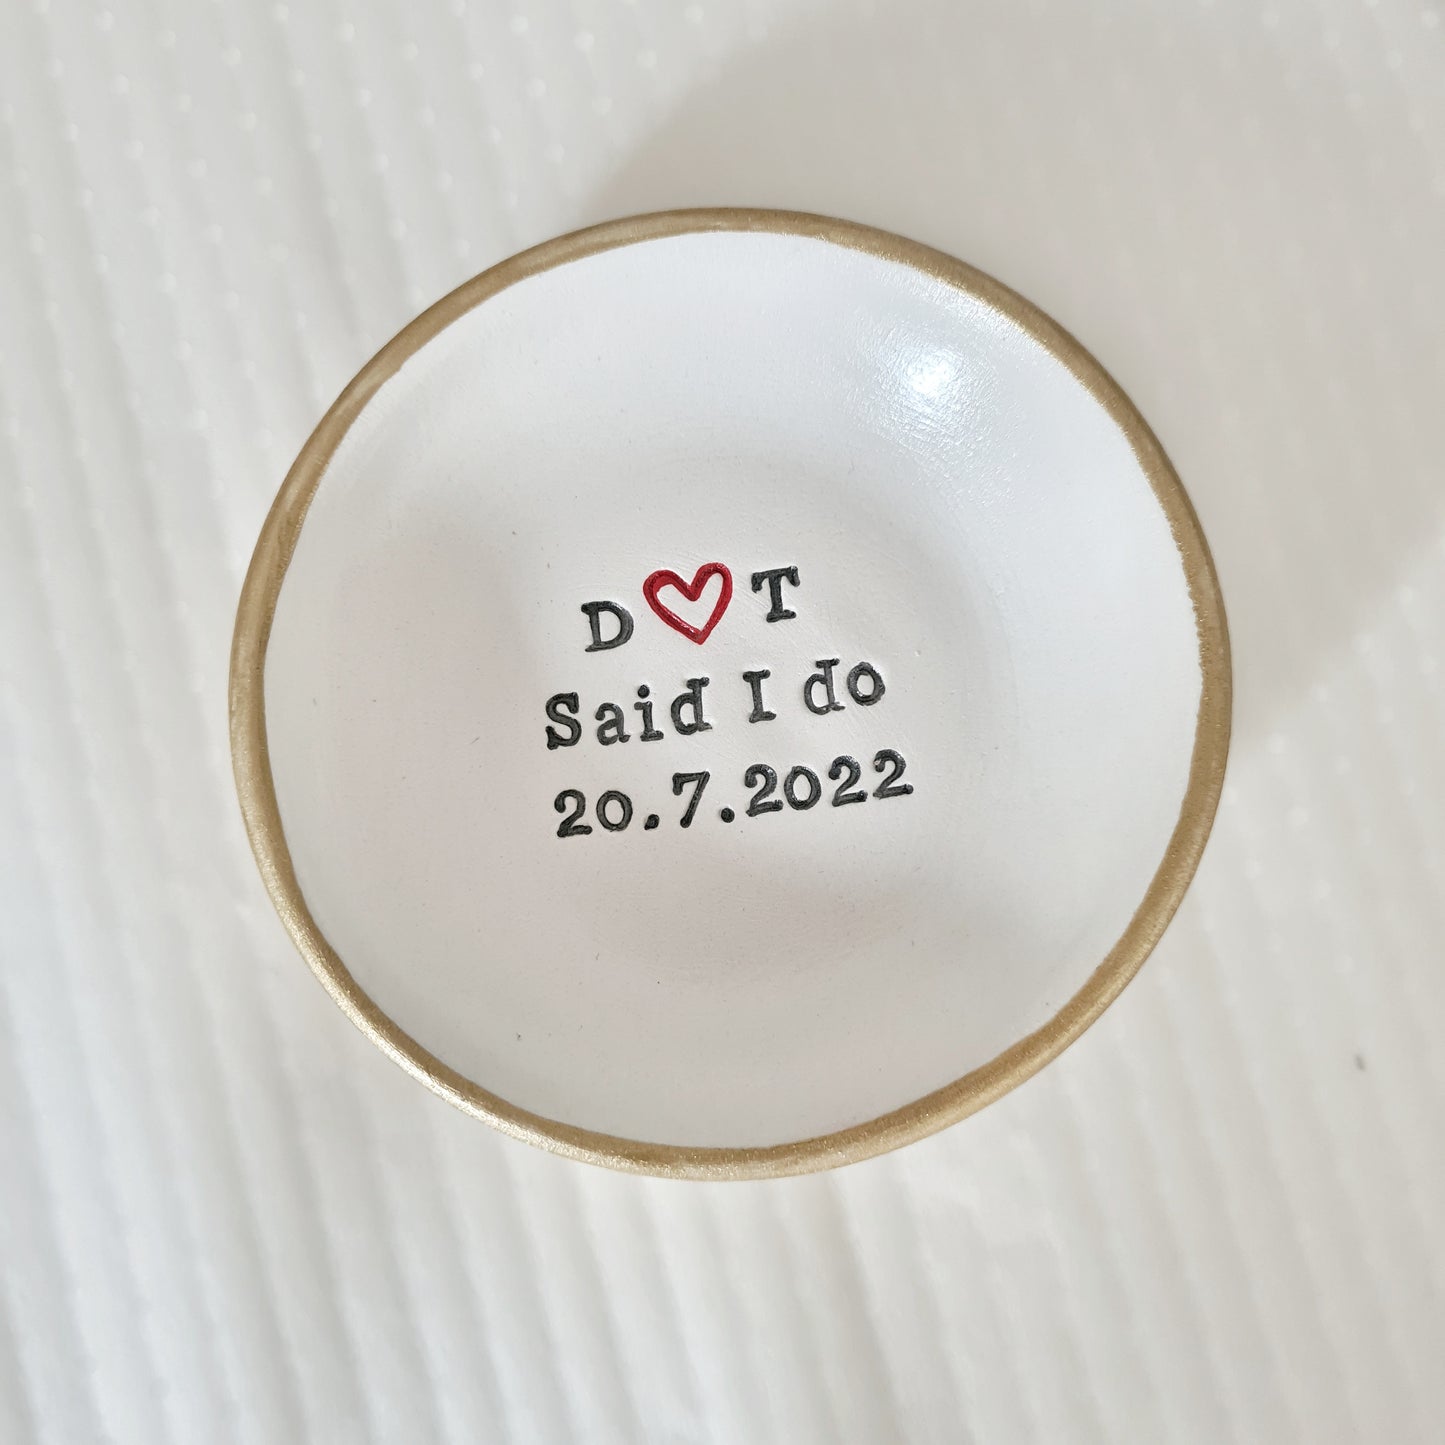 Personalised wedding keepsake 'I do' dish with date